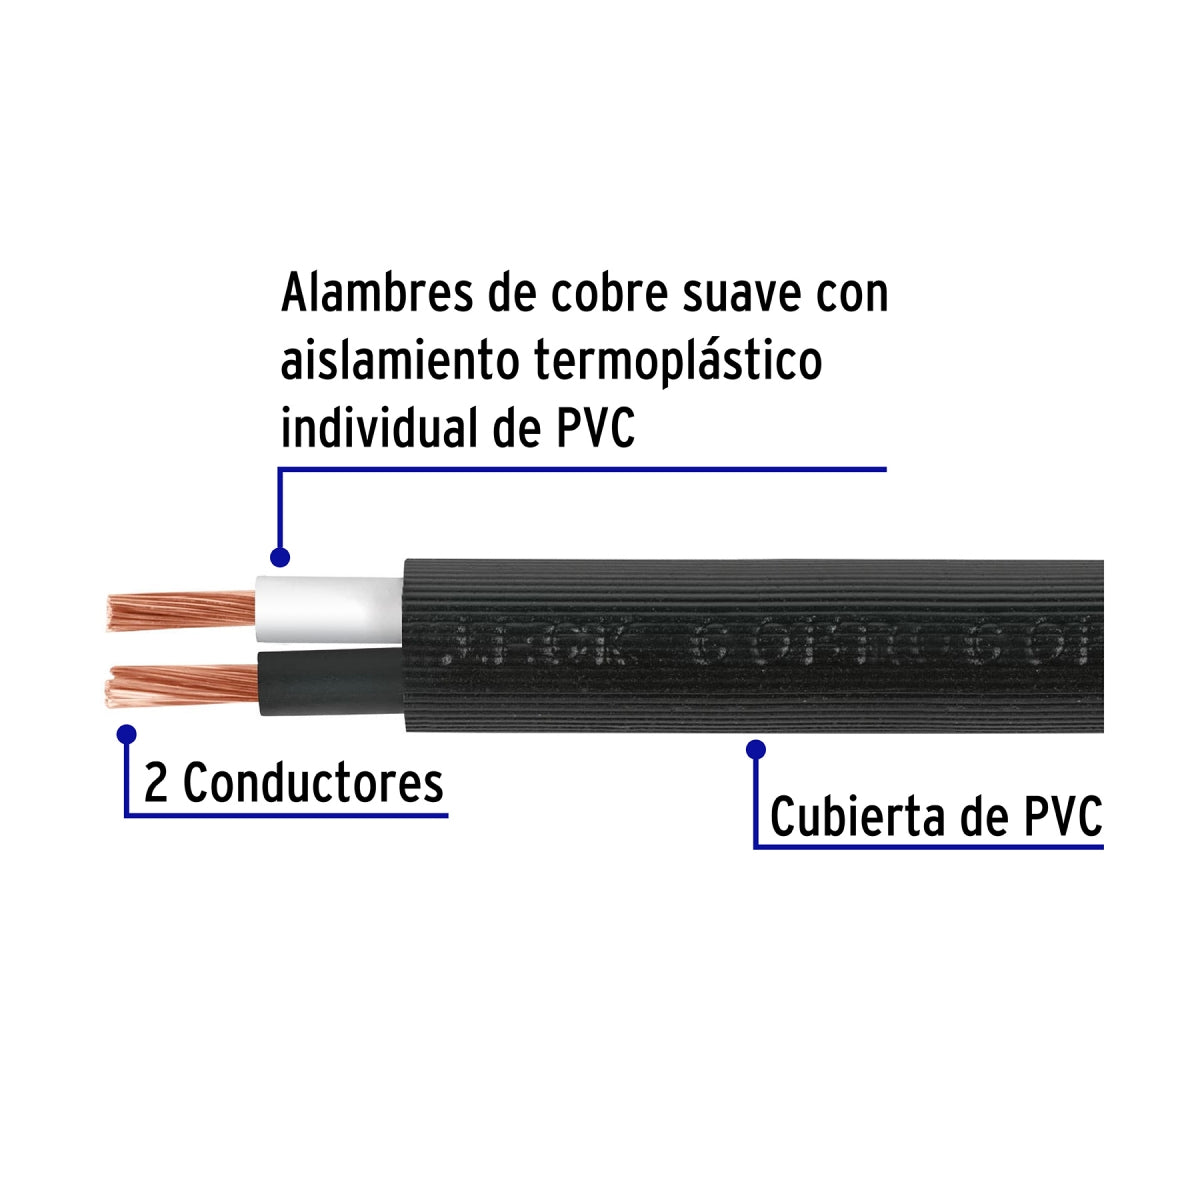 Cable uso extra rudo 2x14 cobre (por metro) SKU:'40004